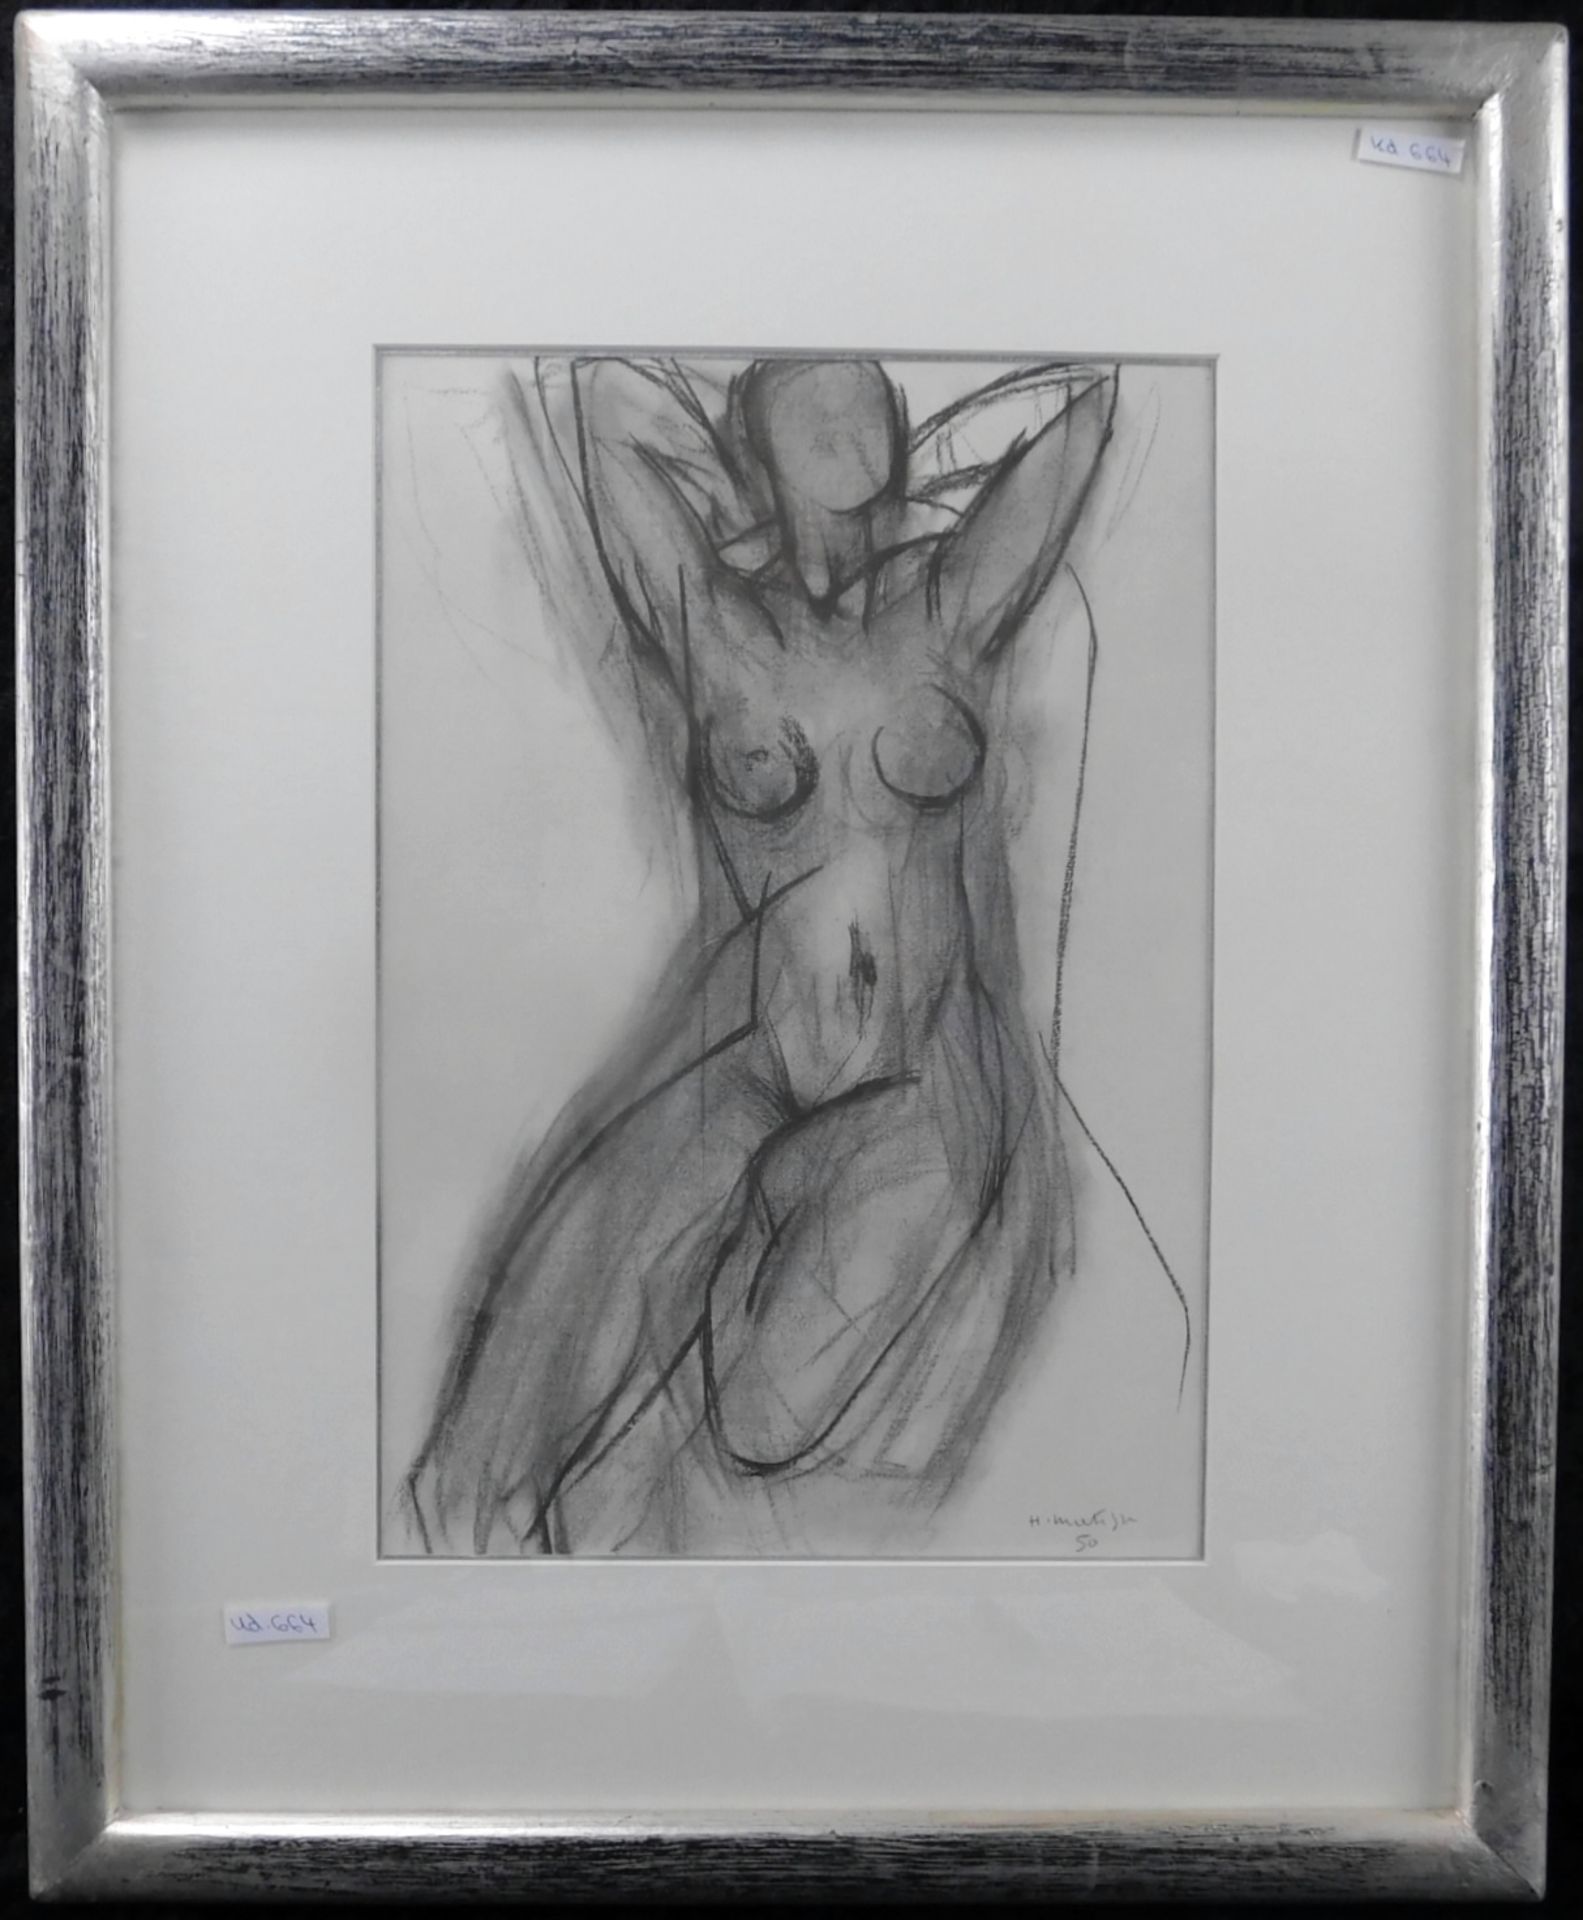 Henry Matisse Kunstdruck "Nu dans un fauteuil" 34,5 x 24 cm, m.R.